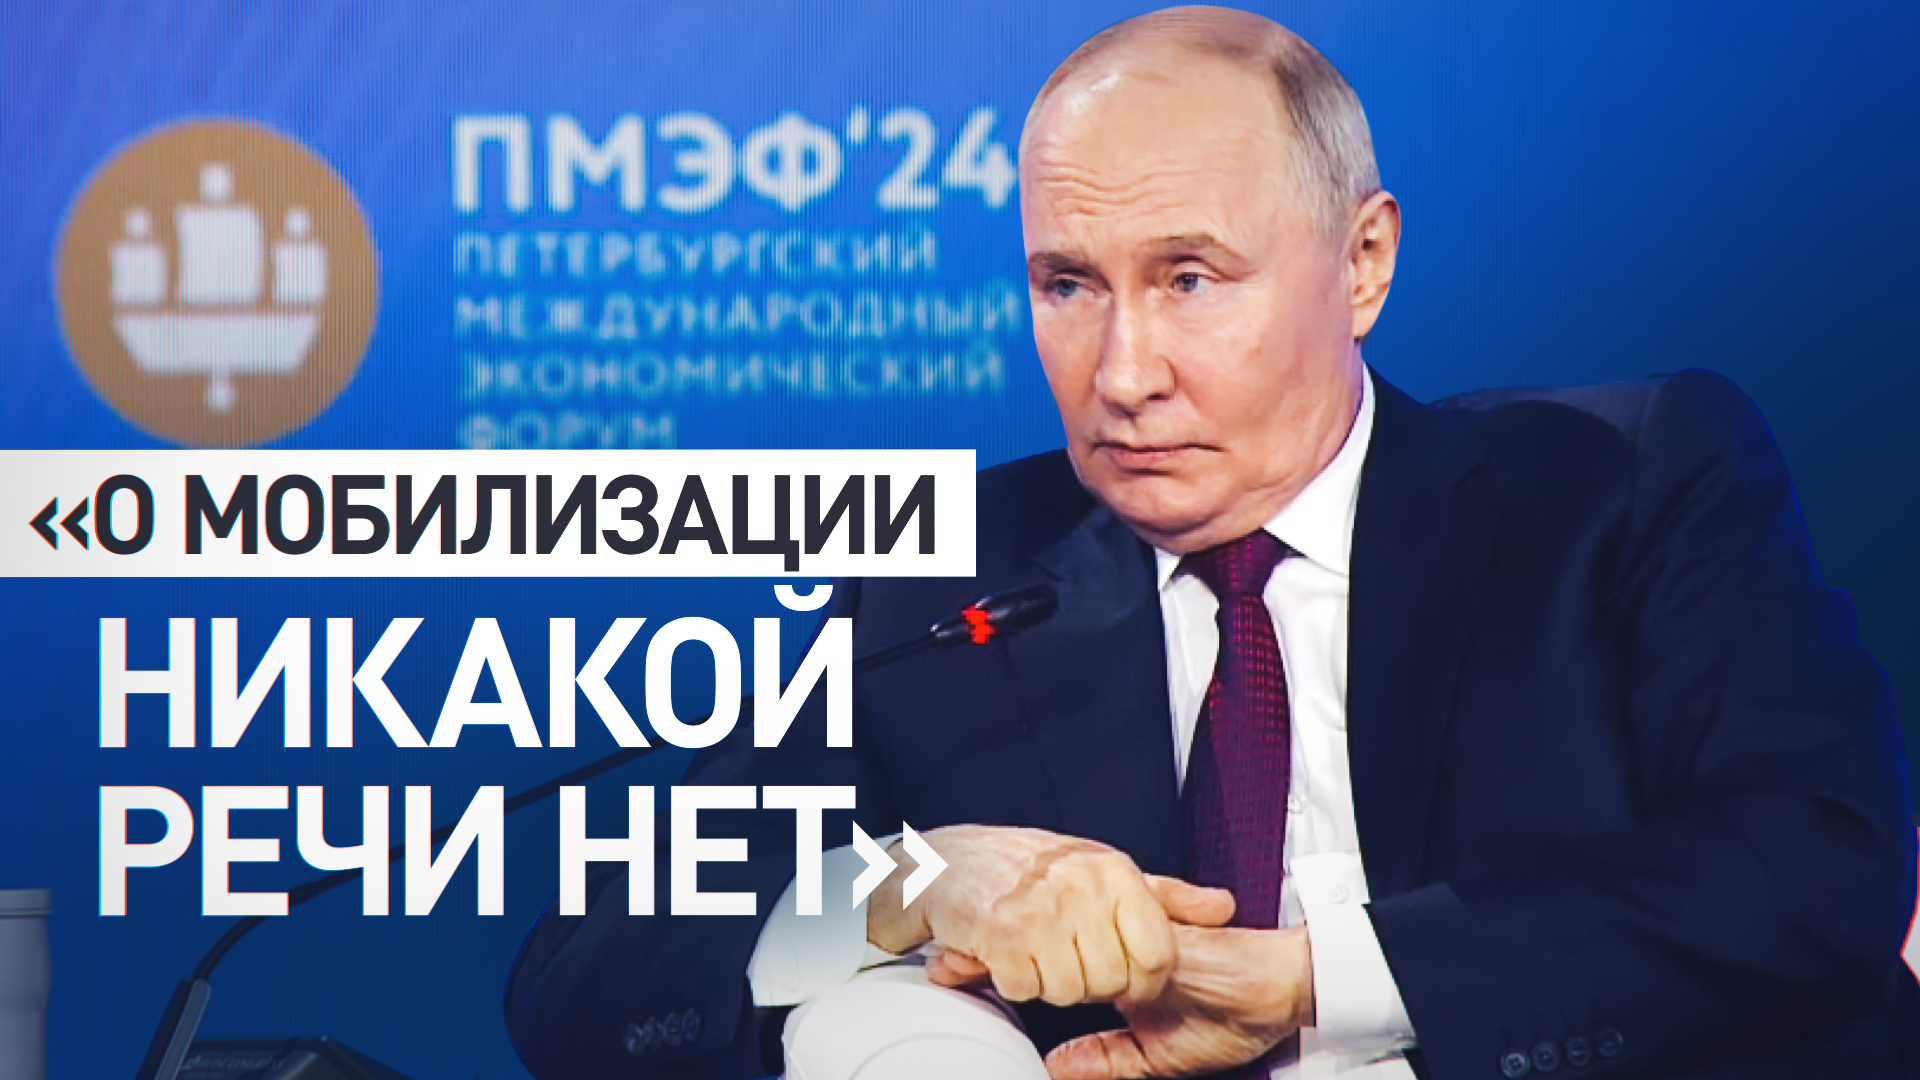 Мы этого не планируем: Путин  о необходимости проведения мобилизации